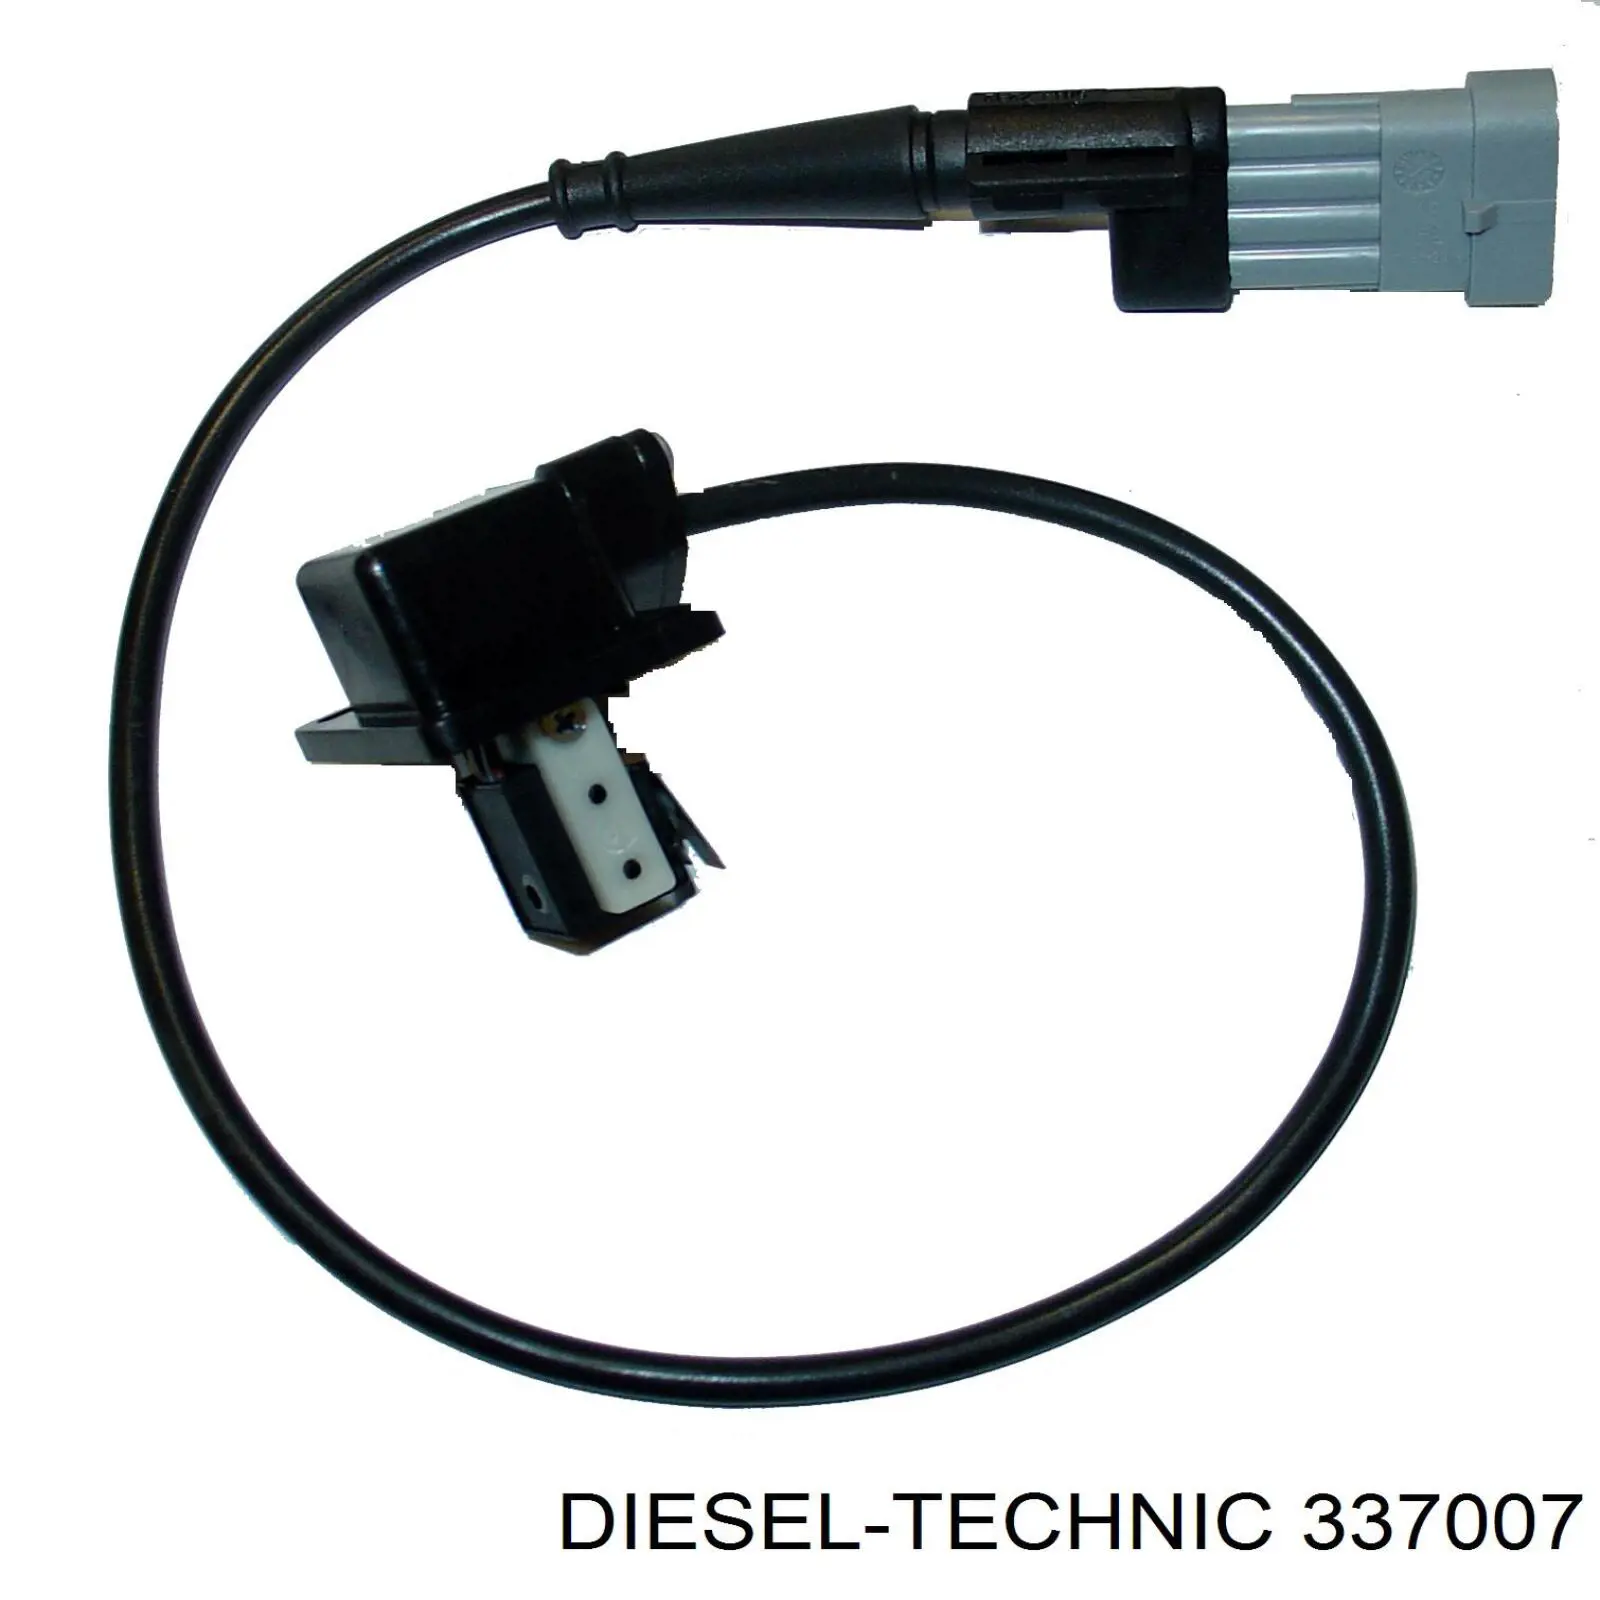 337007 Diesel Technic contacto de aviso, nivel refrigerante de el radiador